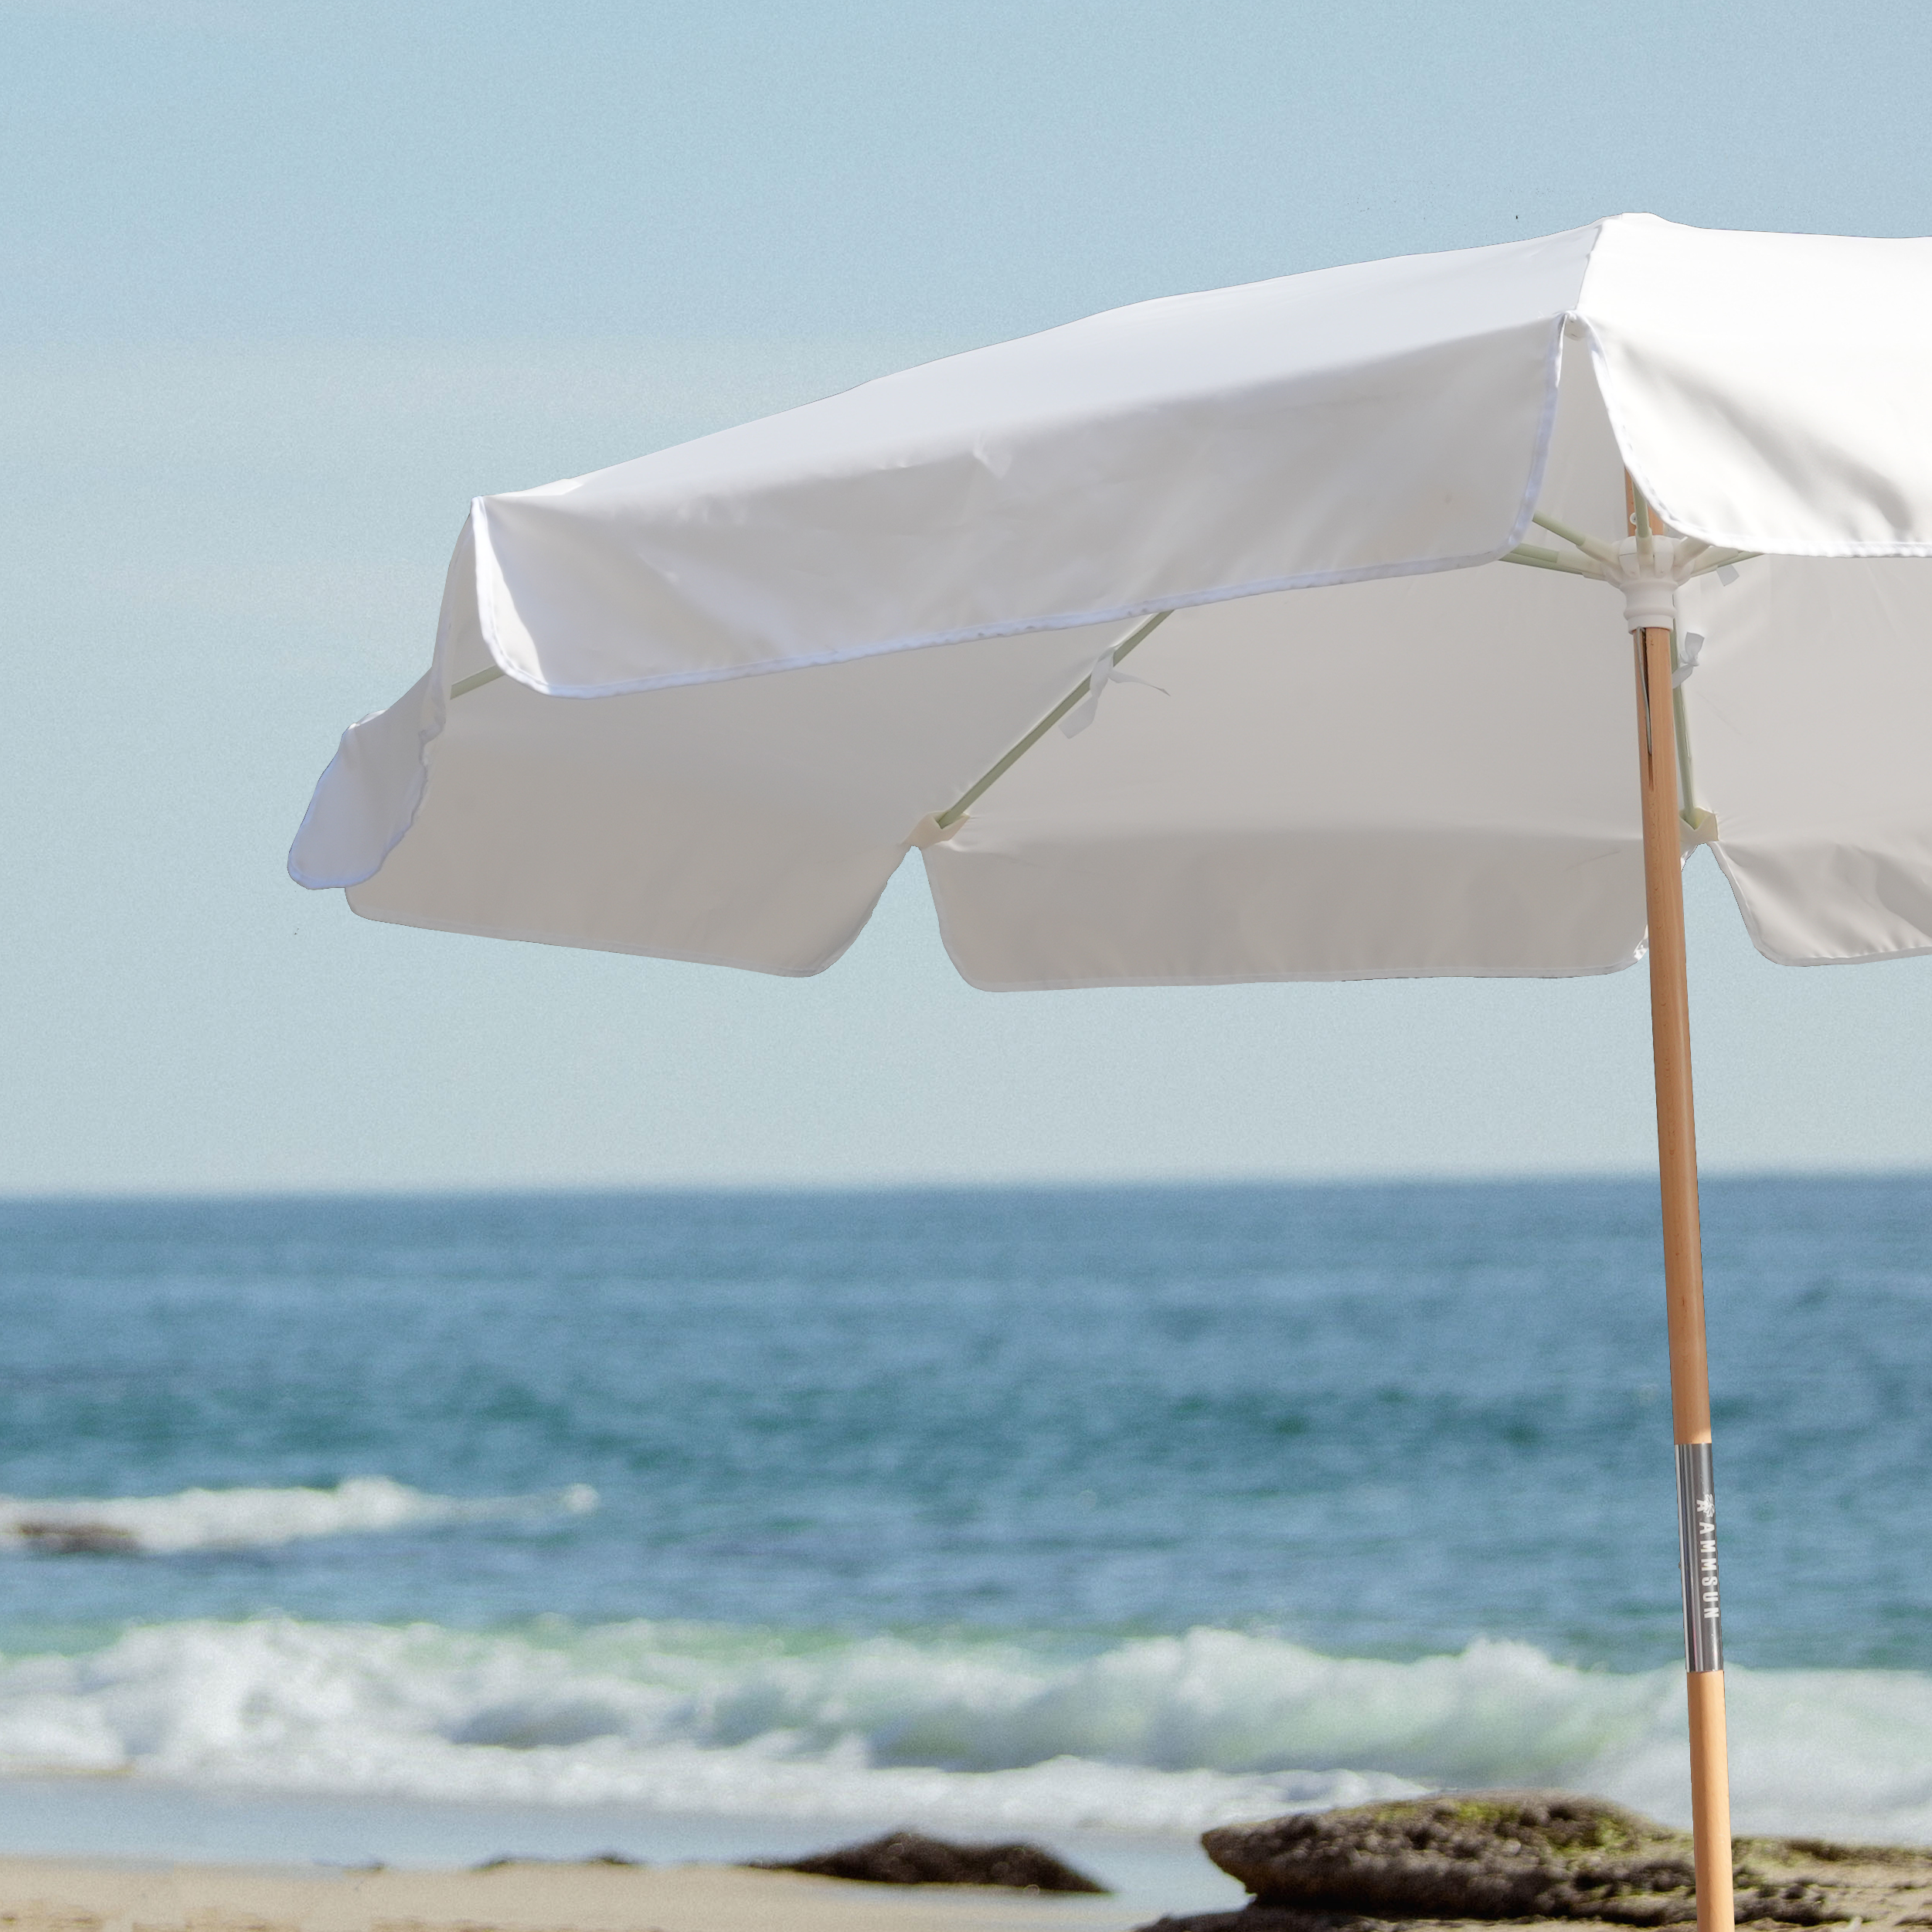 AMMSUN 7.8ft Beach & Patio Umbrella Vintage White